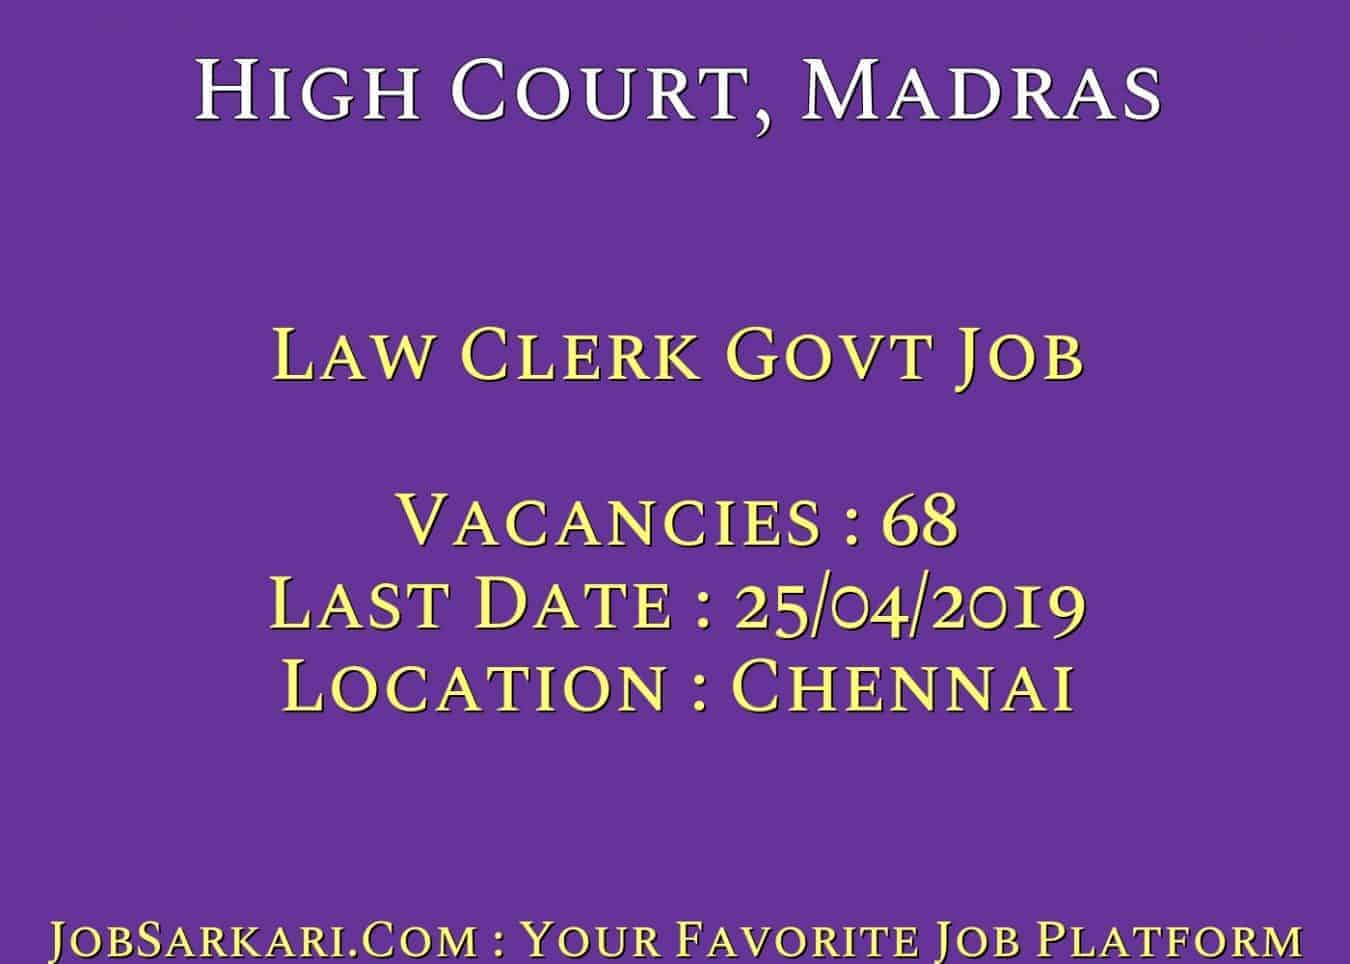 High Court, Madras Recruitment 2019 For Law Clerk Govt Job